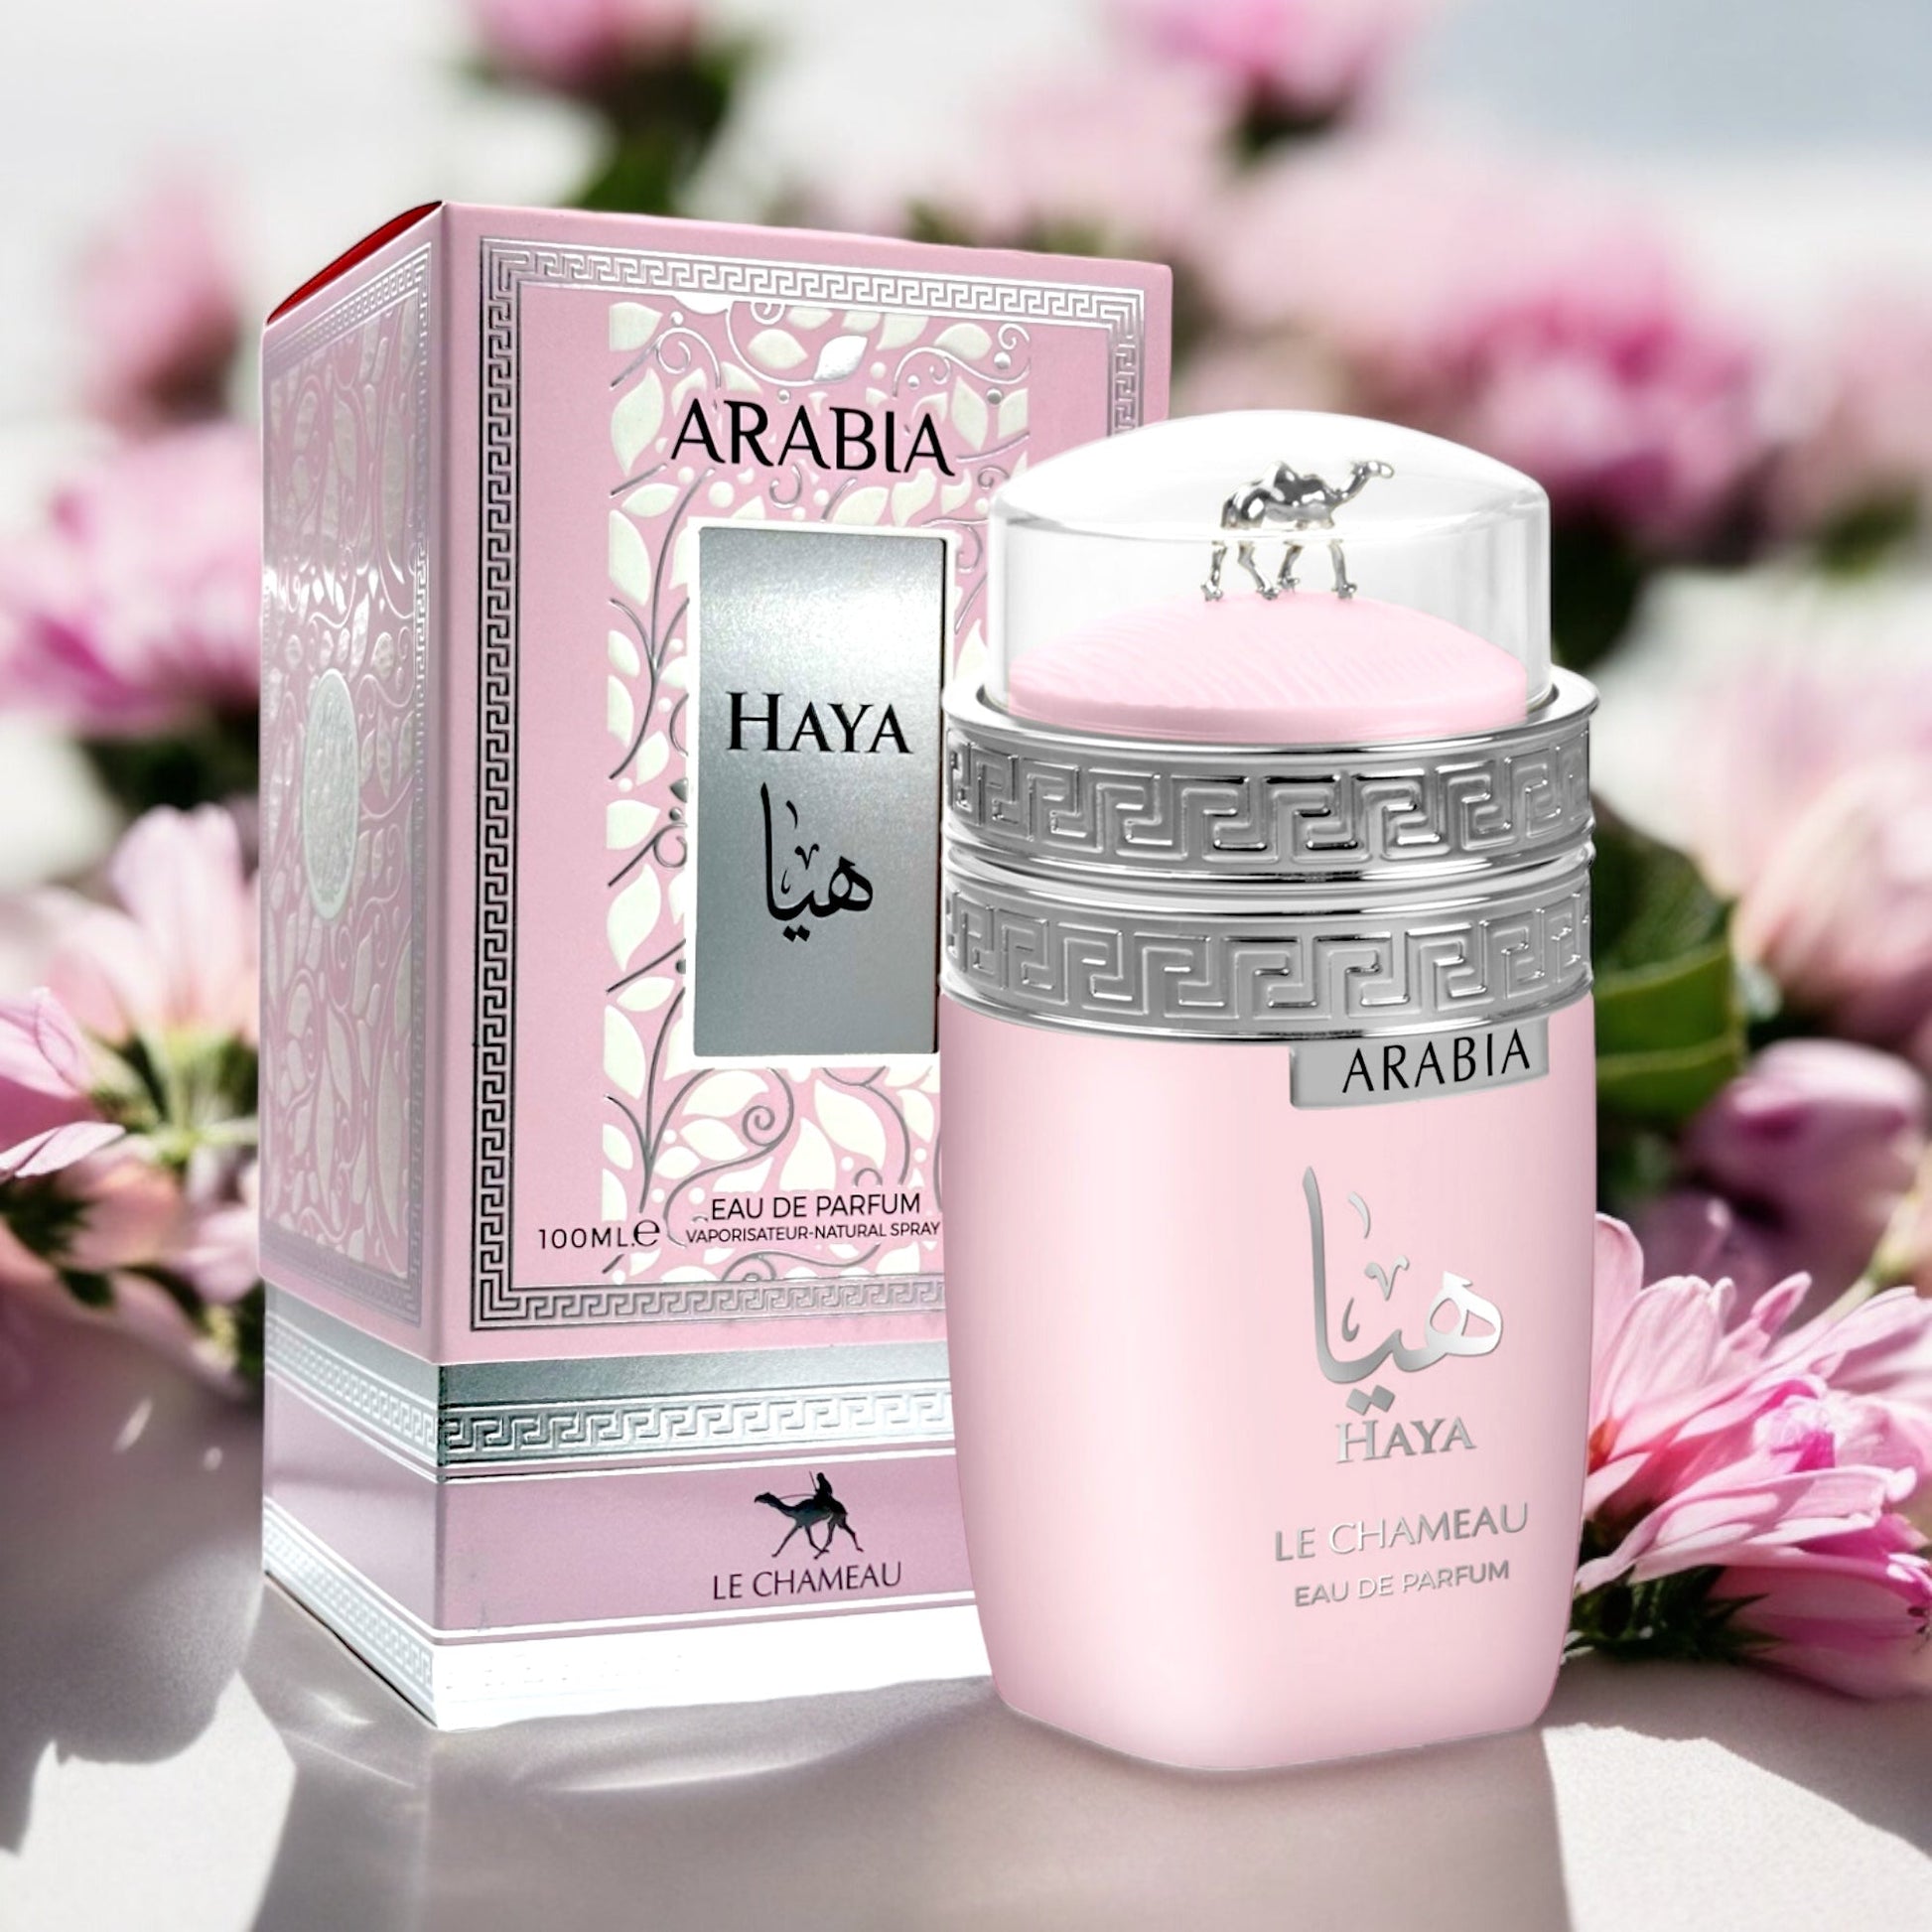 Arabia Haya By Le Chameau Eau de Parfum 3.4 Oz. Unisex